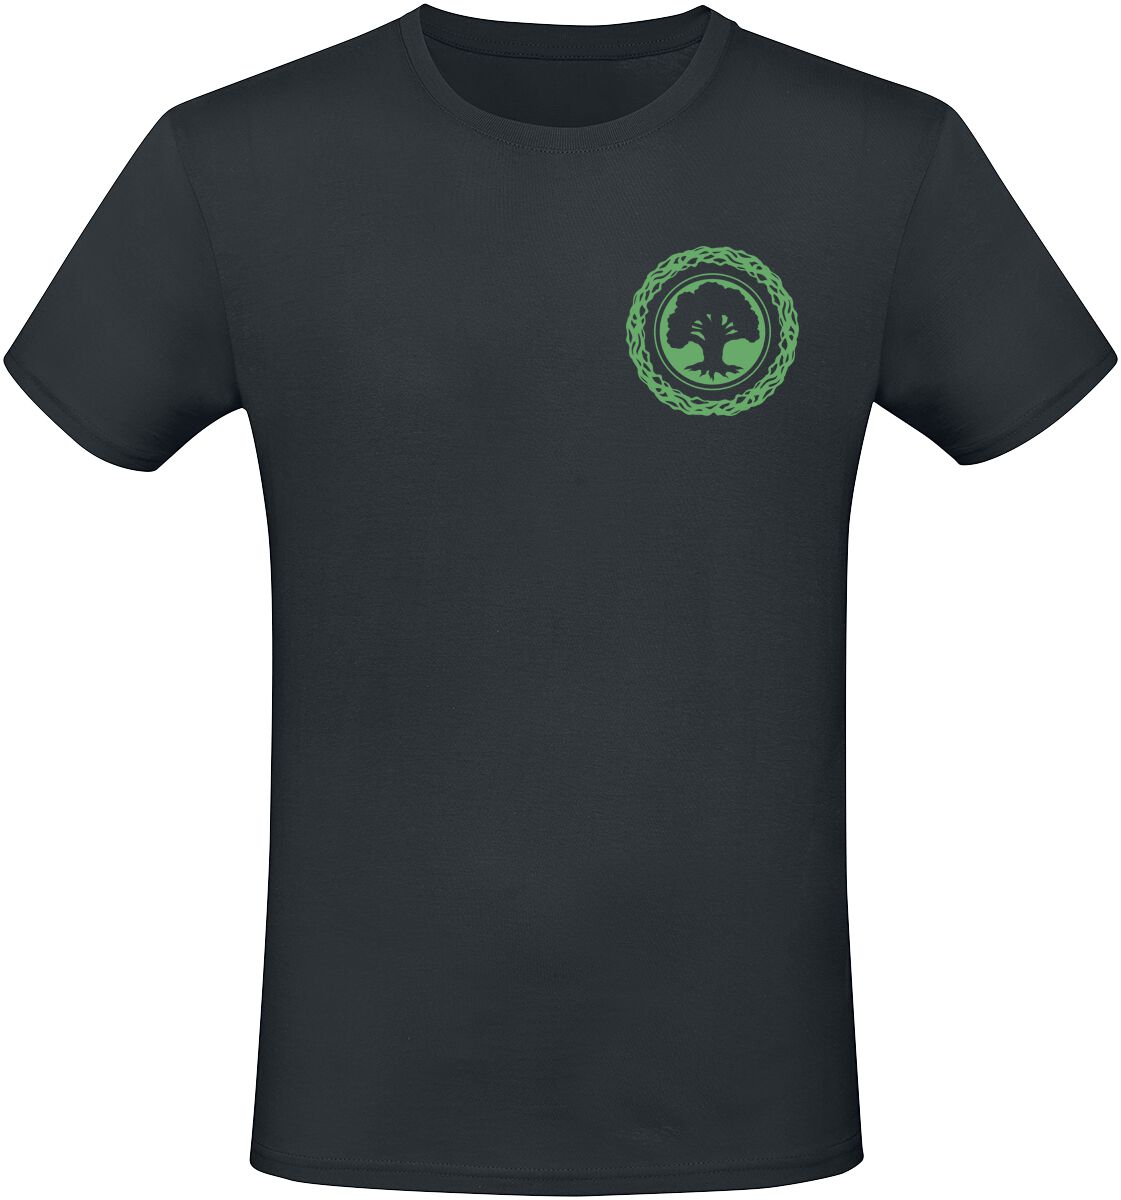 Magic: The Gathering - Gaming T-Shirt - Green Mana - S bis XXL - für Männer - Größe L - schwarz  - EMP exklusives Merchandise!